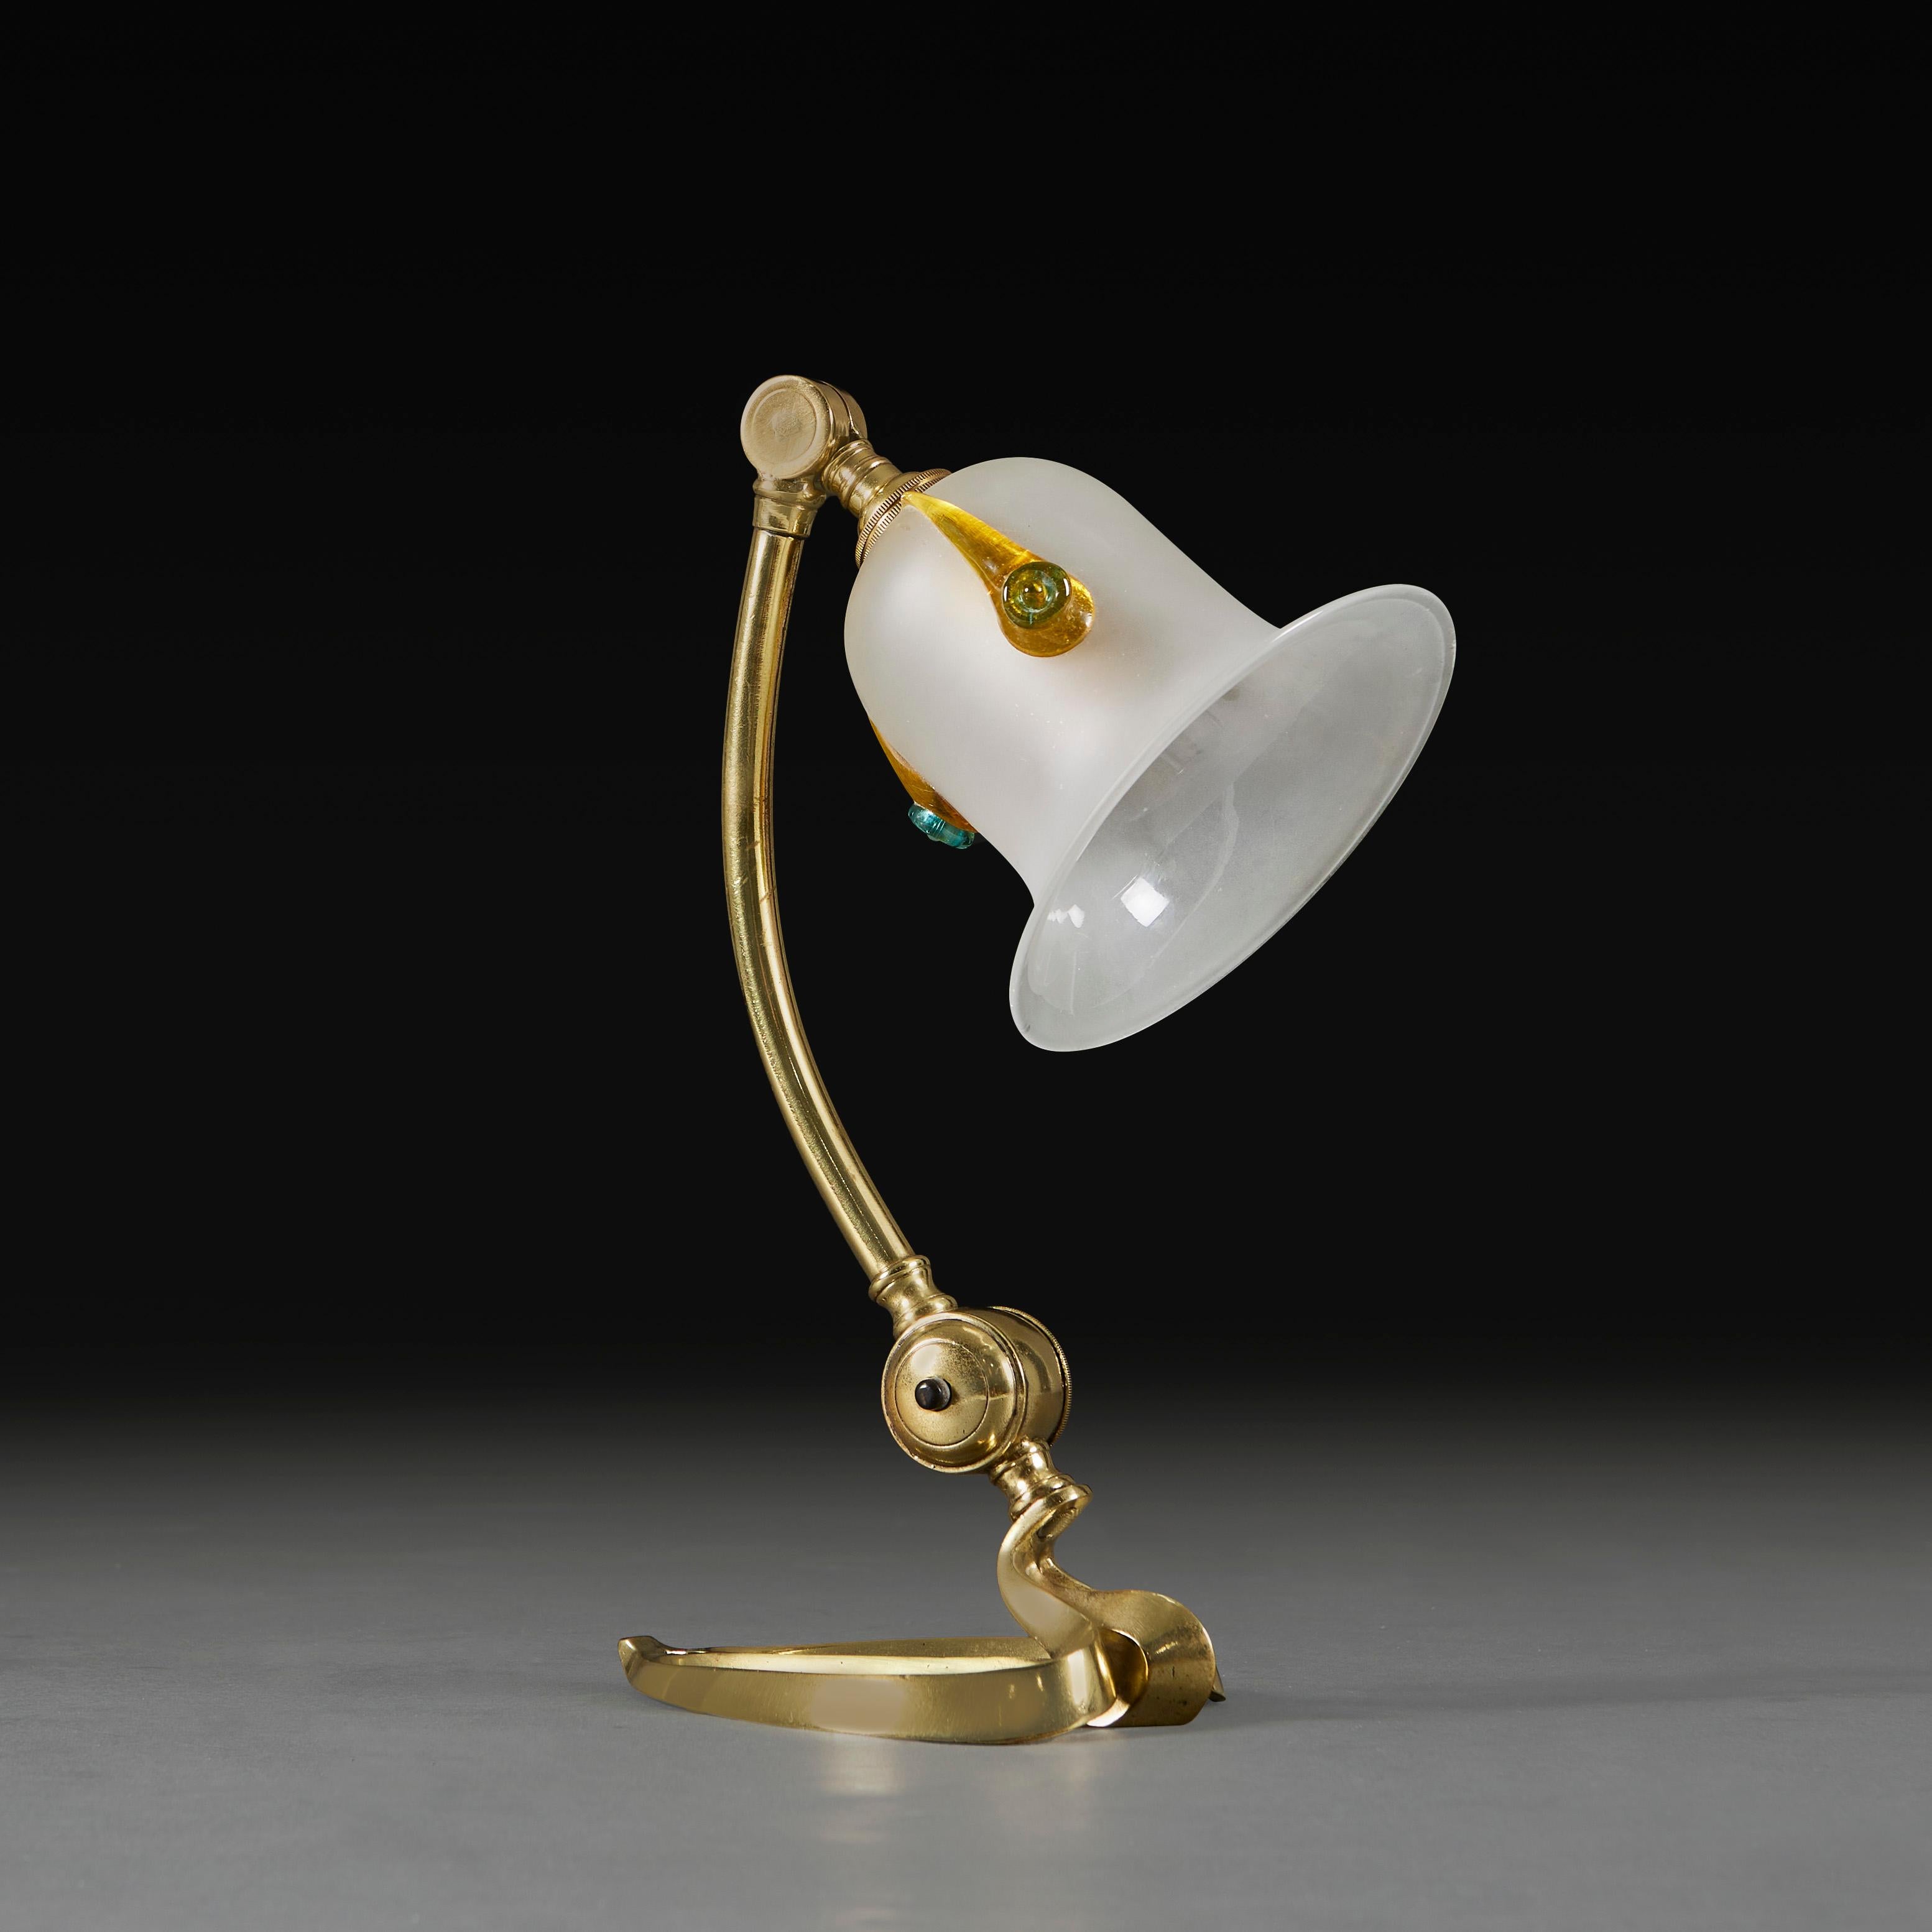 England, um 1900

Gelenkige Messinglampe mit herzförmigem Sockel, mit Messingschraube am Hals, zur Verwendung als Schreibtischlampe oder zur Montage an der Wand. Wird W.A.S Benson zugeschrieben. 

Bitte beachten Sie: Dies ist derzeit für das